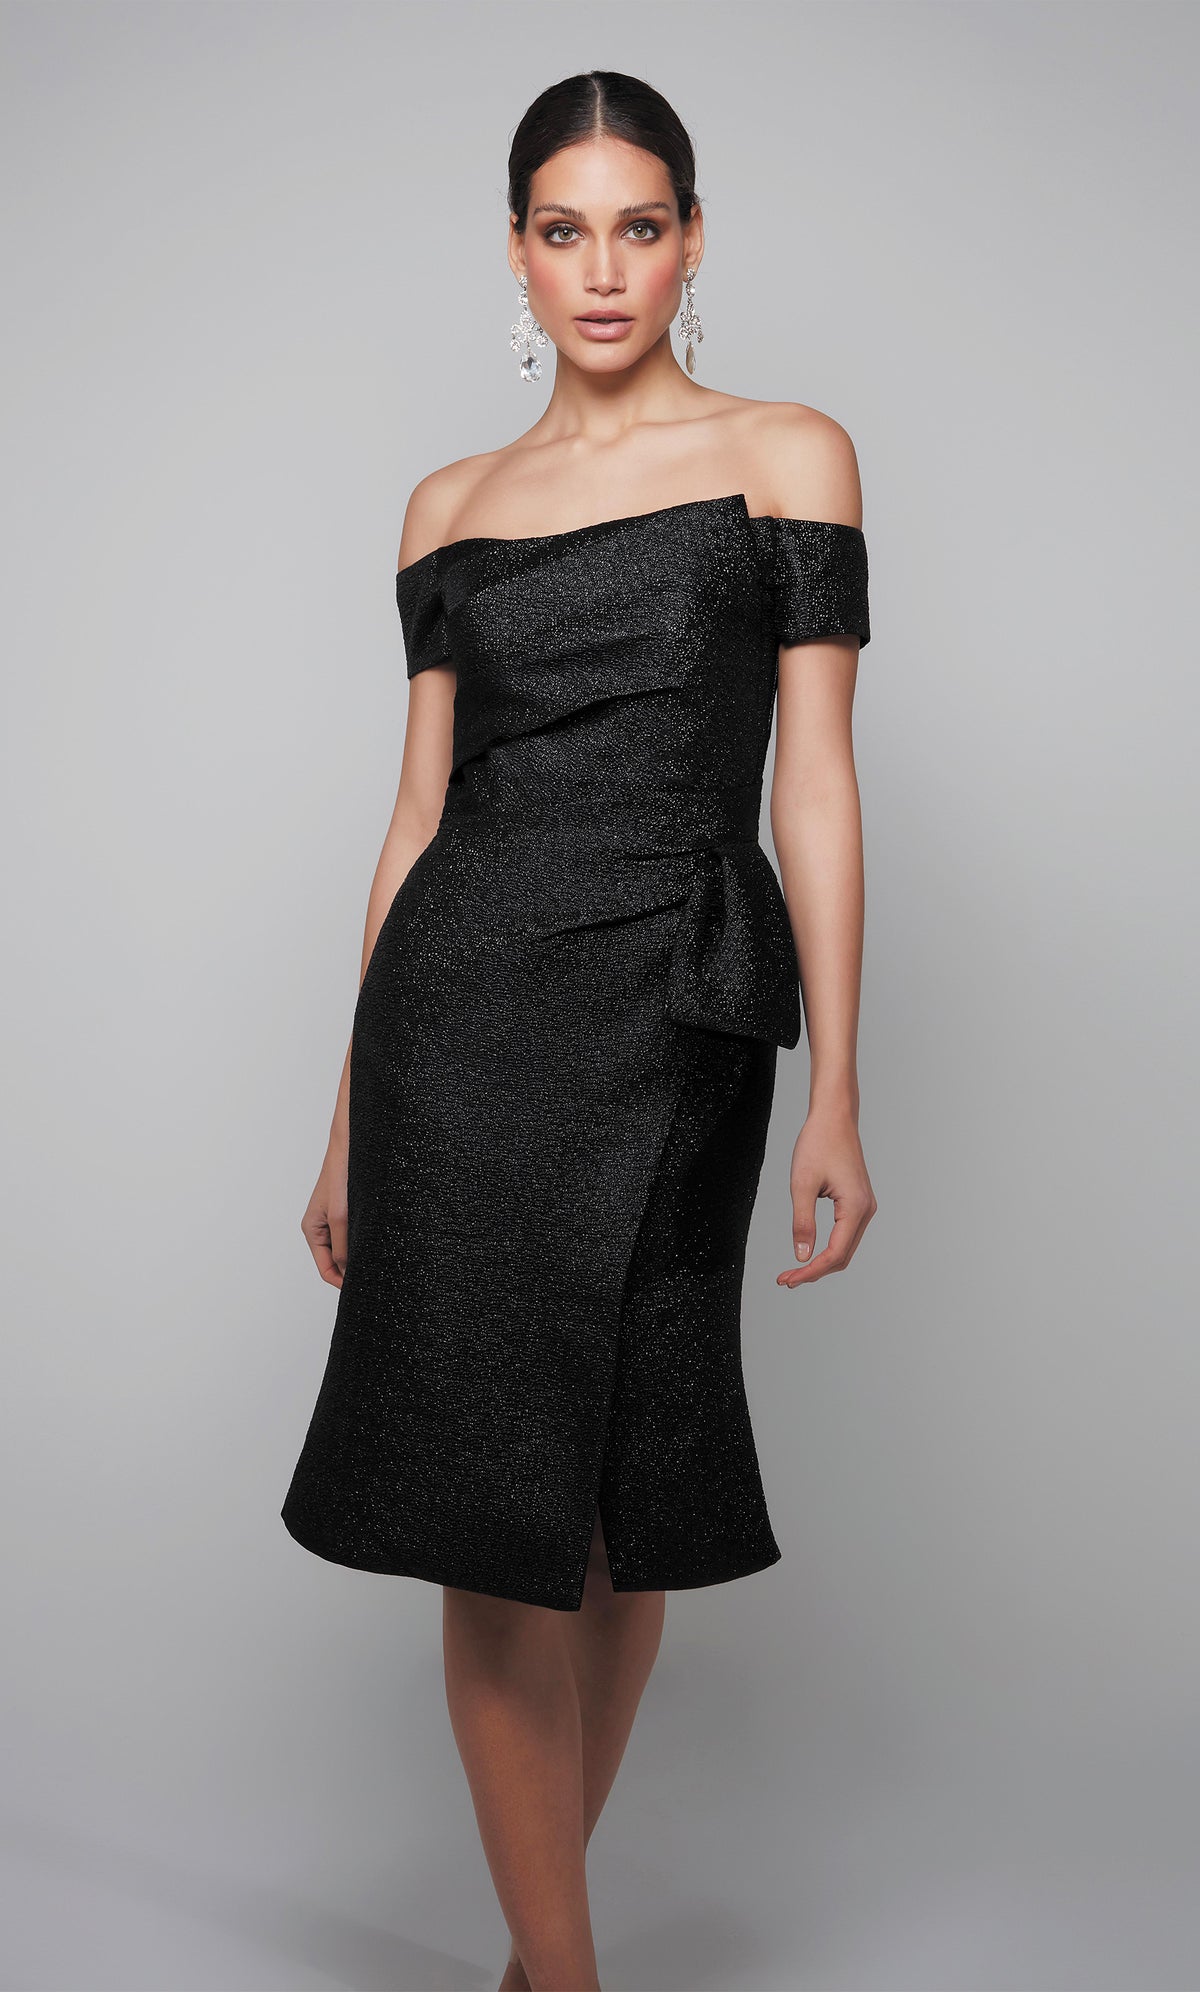 Off the shoulder black midi dress with side slit.